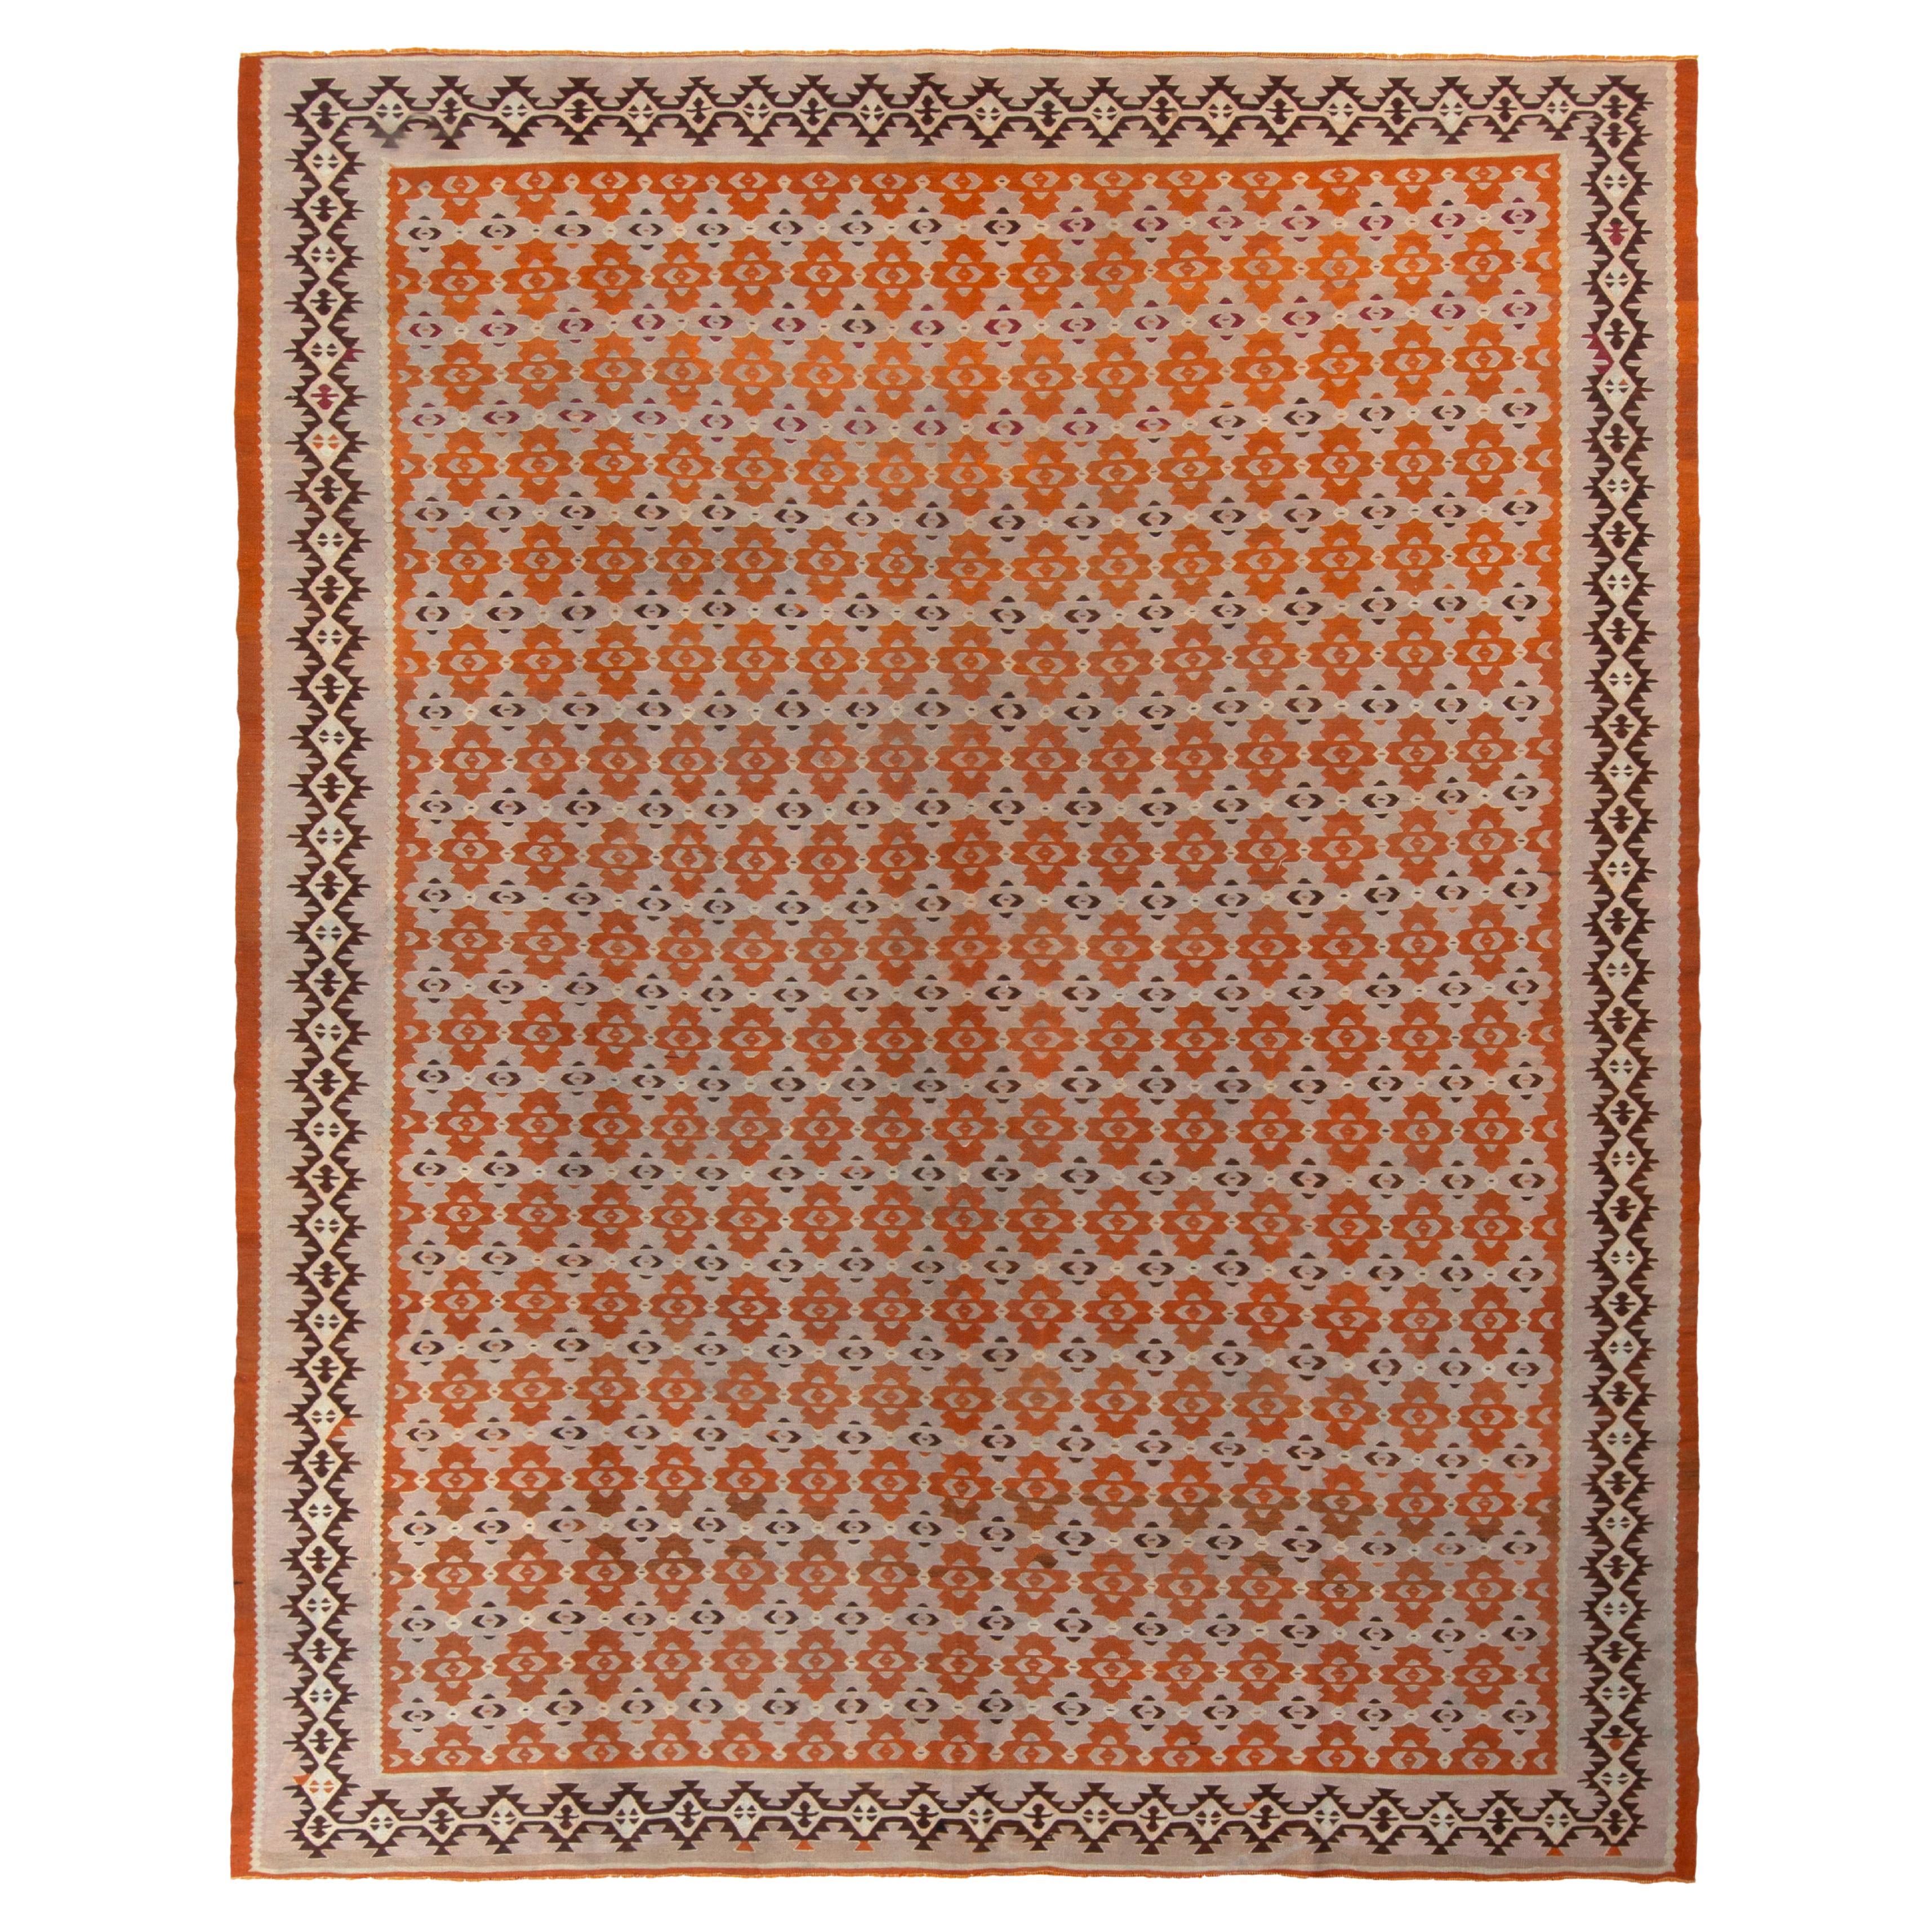 Handwoven Vintage Kilim Rug in Pink, Brown Geometric Pattern by Rug & Kilim